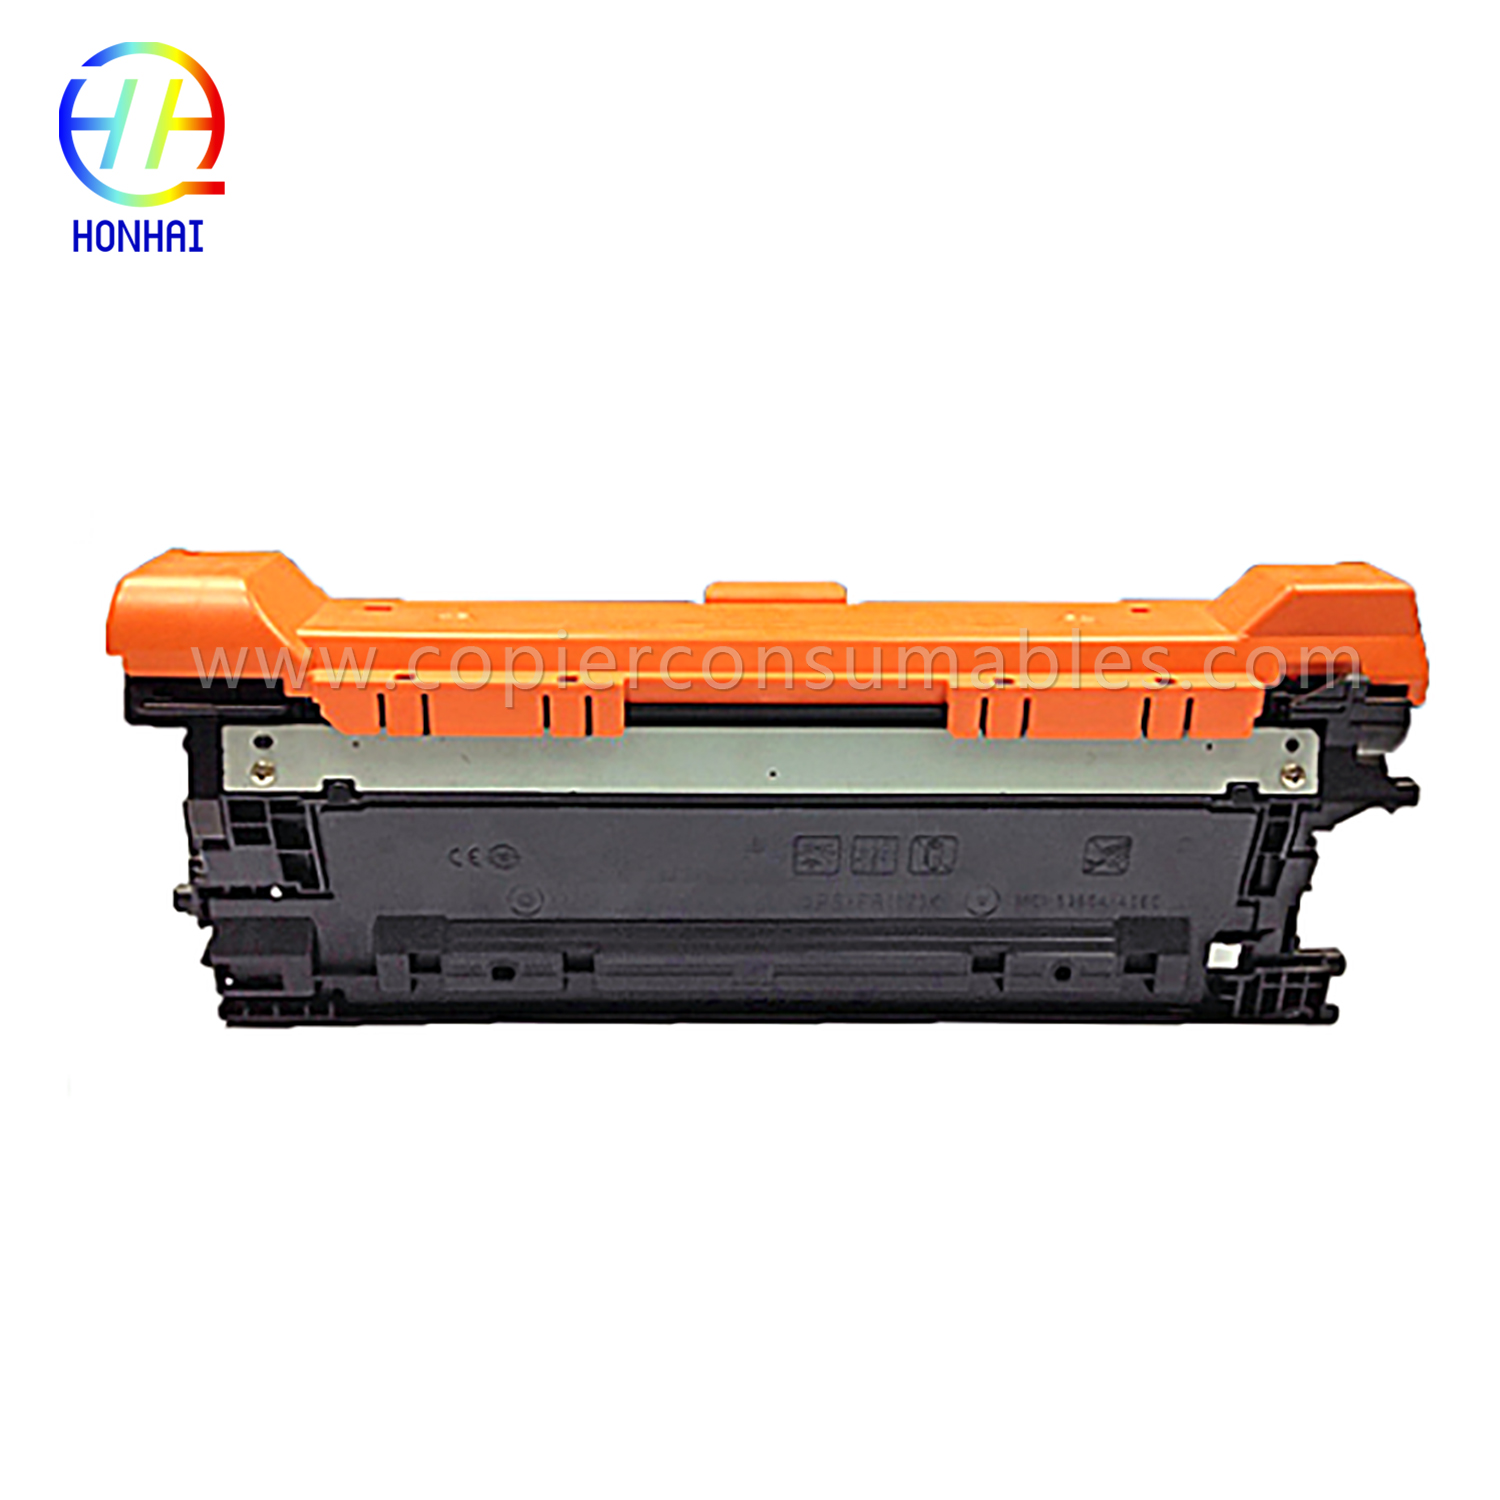 Түстүү тонер картридждери HP Color Laserjet Enterprise M552 M553 (CF362X) -1 拷贝